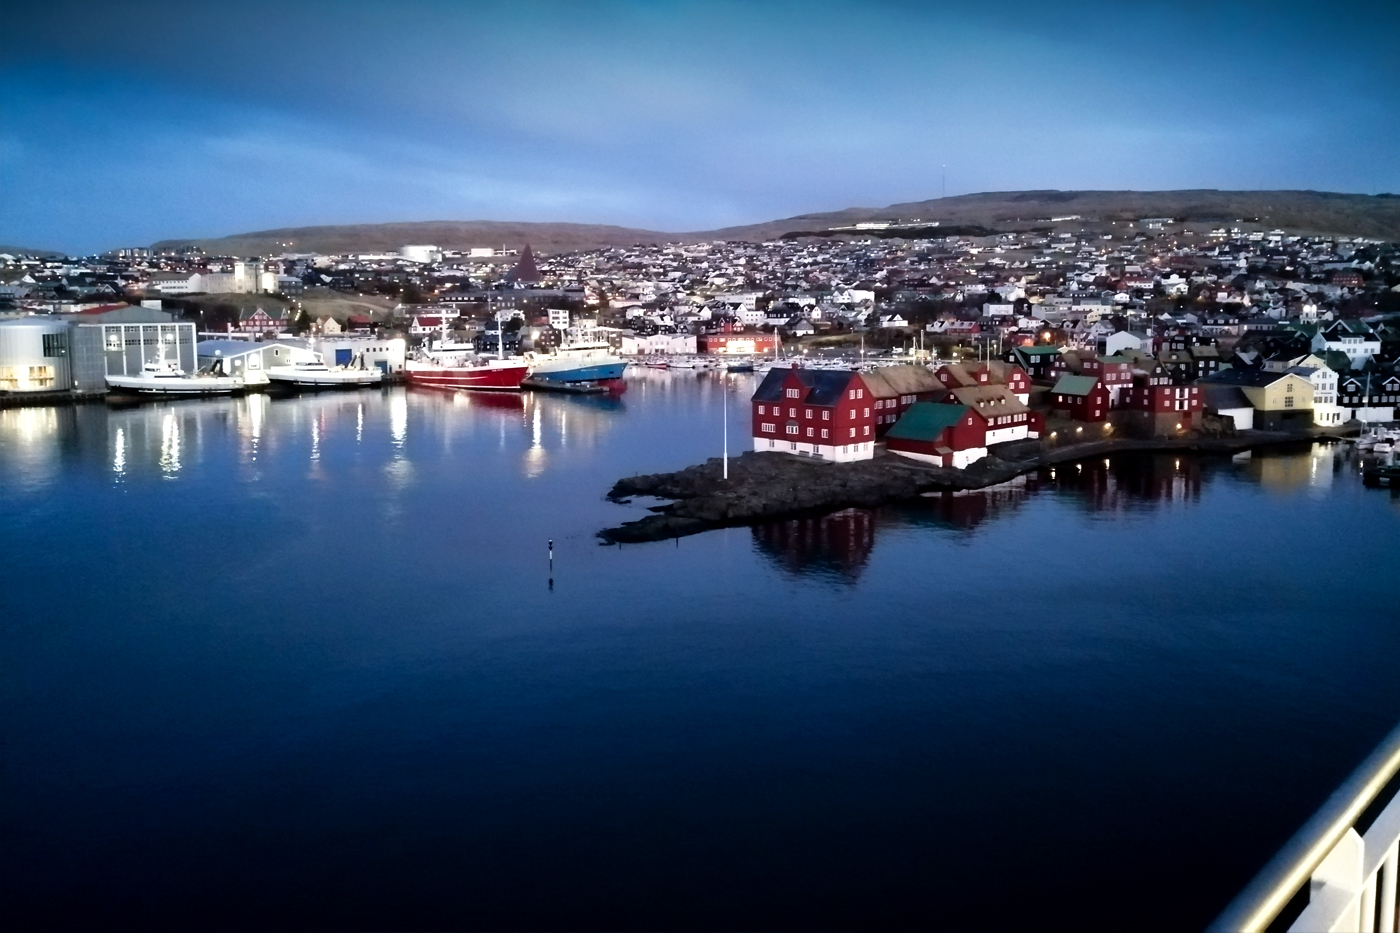 Thorshavn